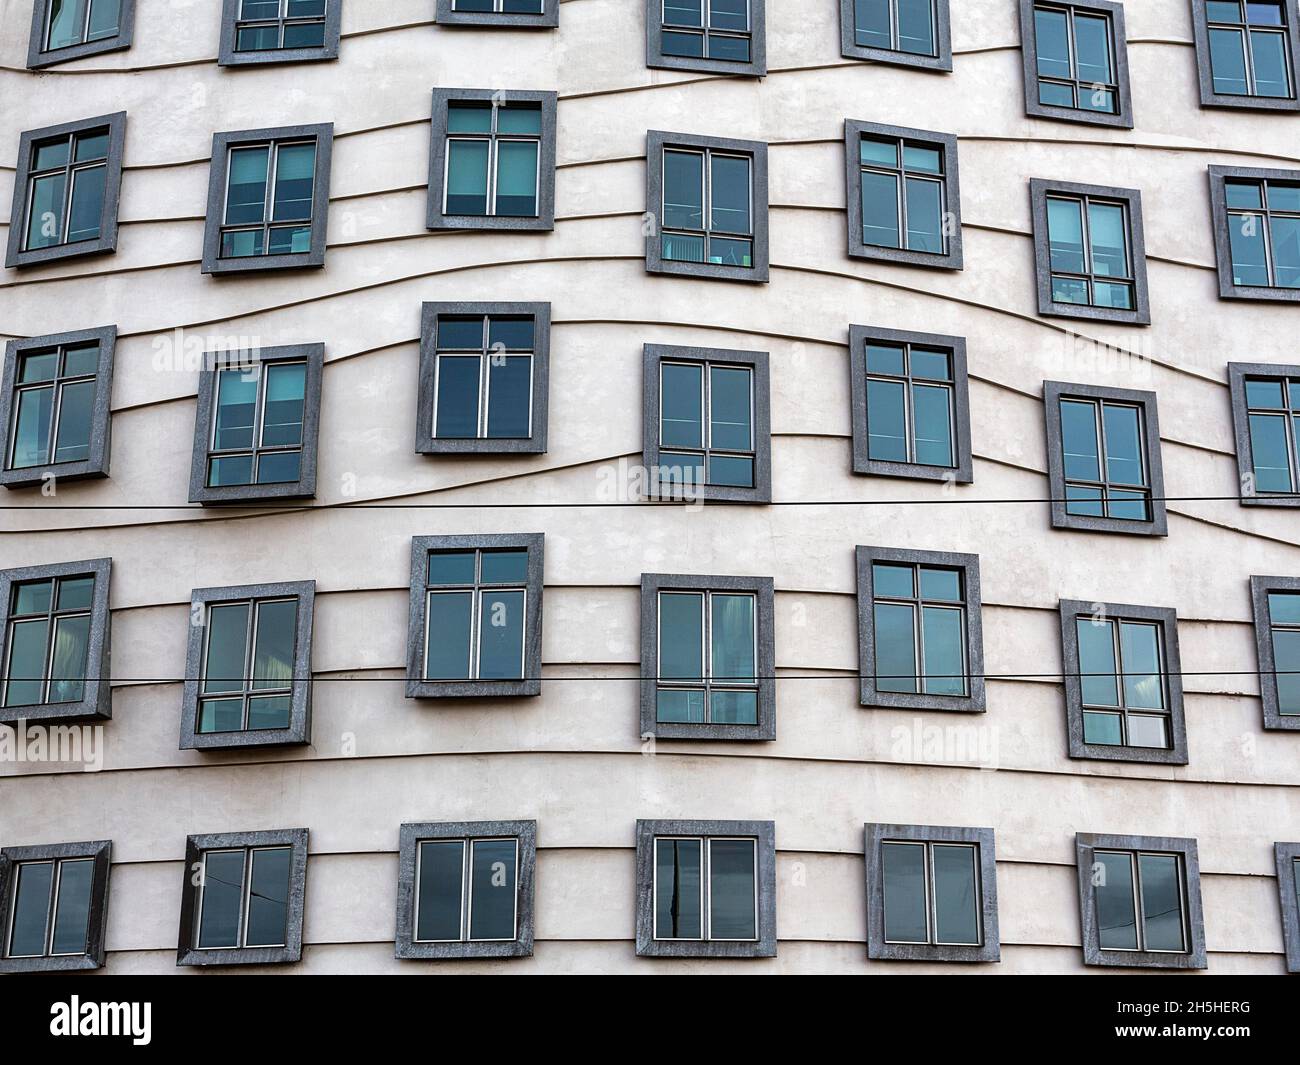 Fassade mit Fenstern, Tanzendes Haus, Bürogebäude Tancici dum, Architekt Vlado Milunic und Frank Gehry, Dekonstruktivismus, Prag, Böhmen Stockfoto